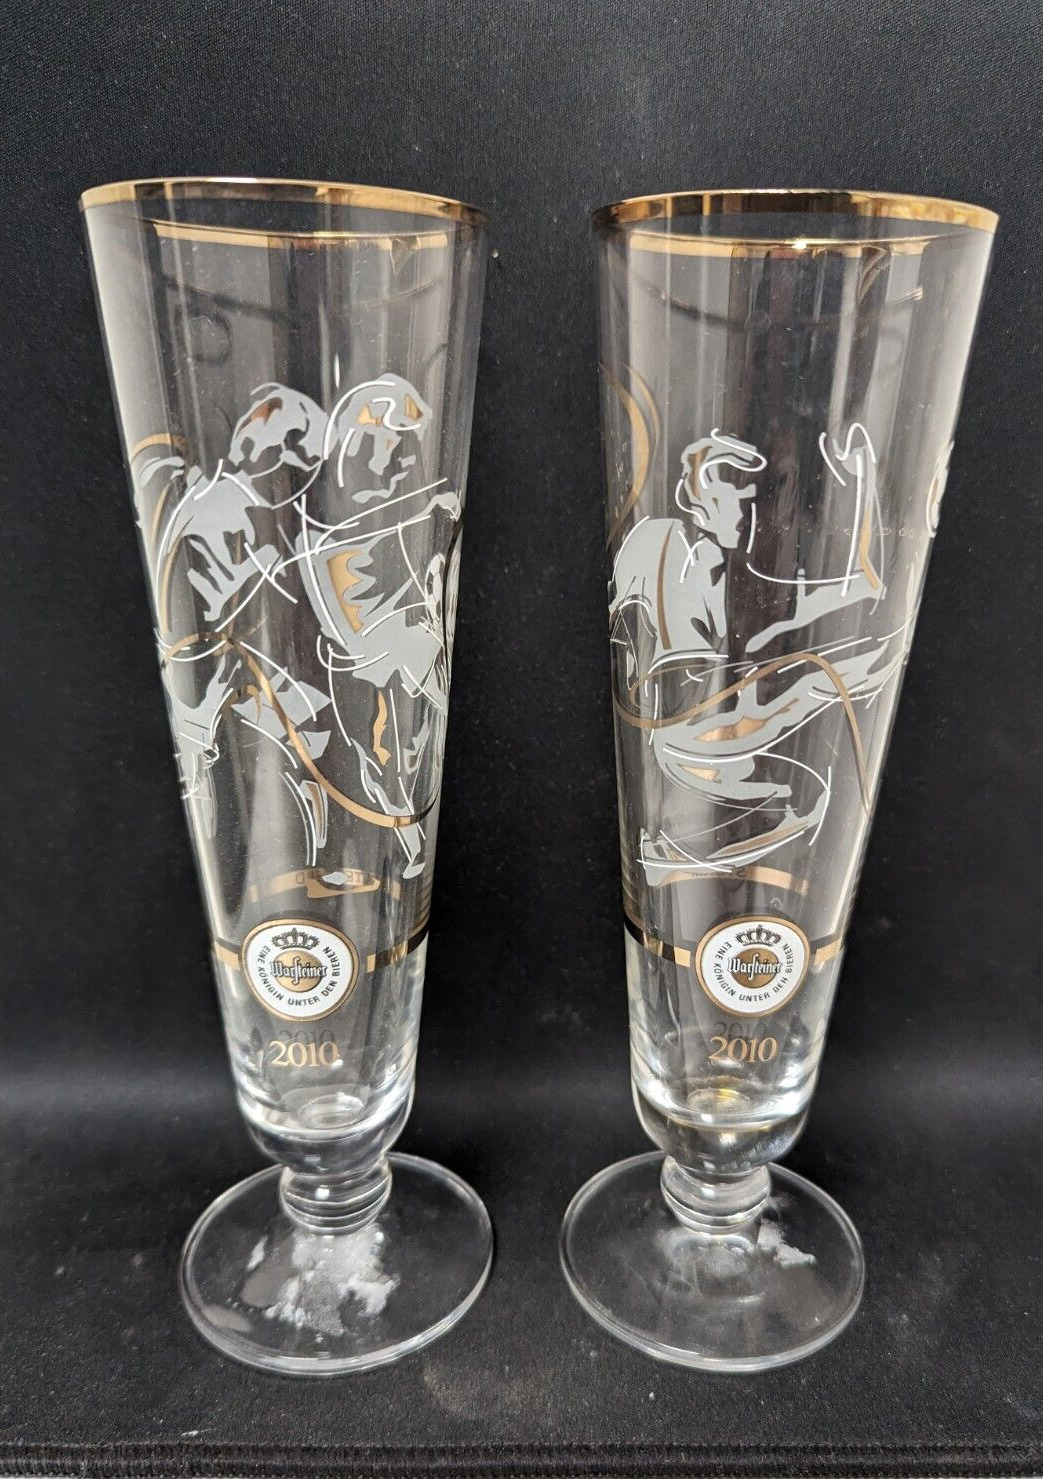 Warsteiner Pilsner Beer Glasses , 2010 World Cup Soccer Edition (Set of 2) Sturm